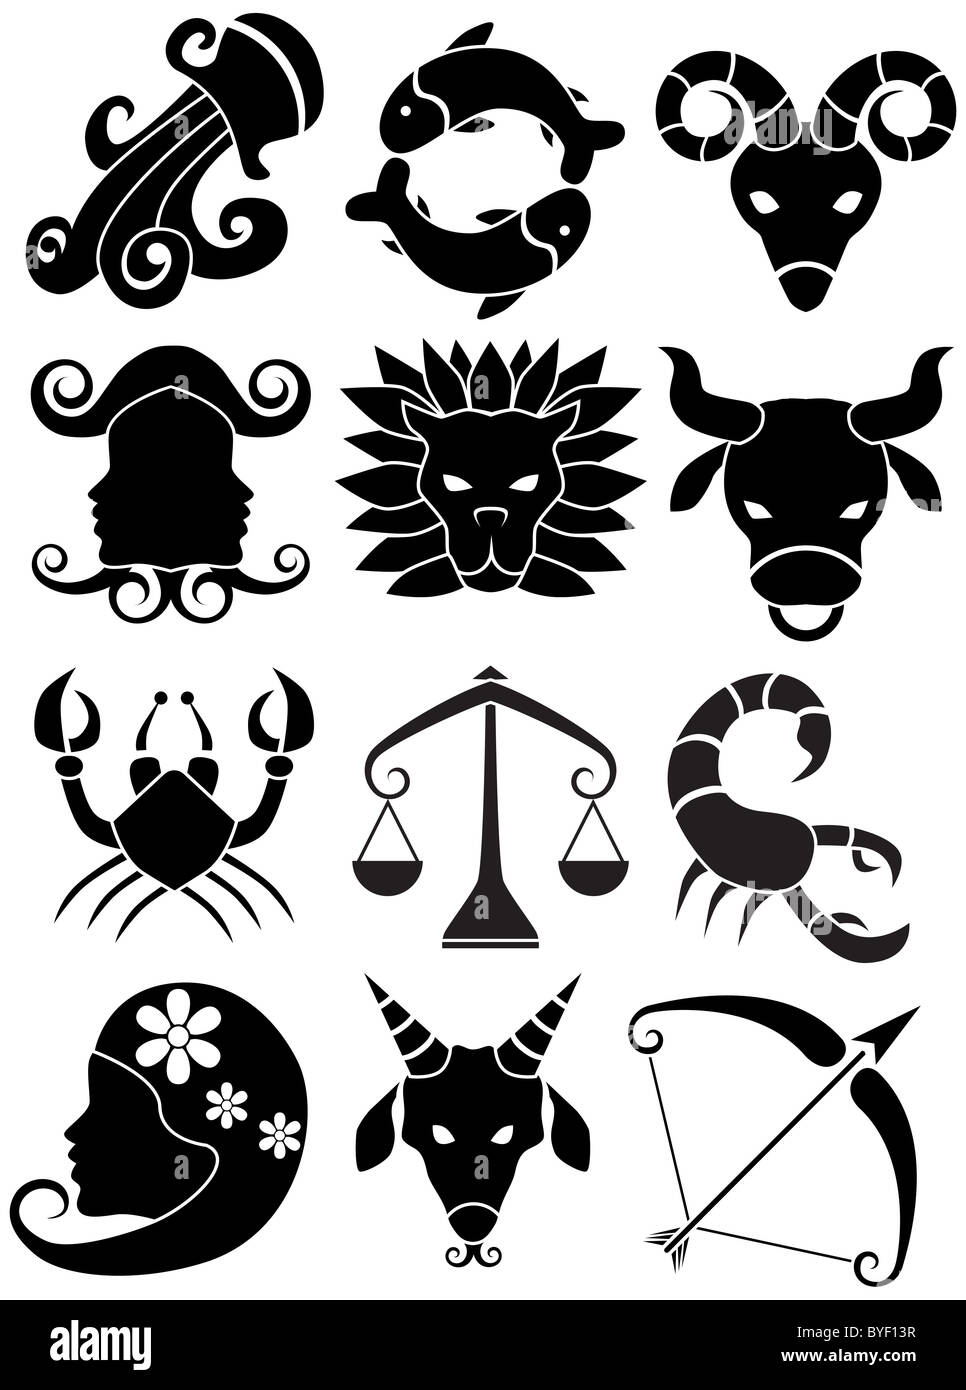 Una imagen de 12 símbolos del zodíaco. Foto de stock